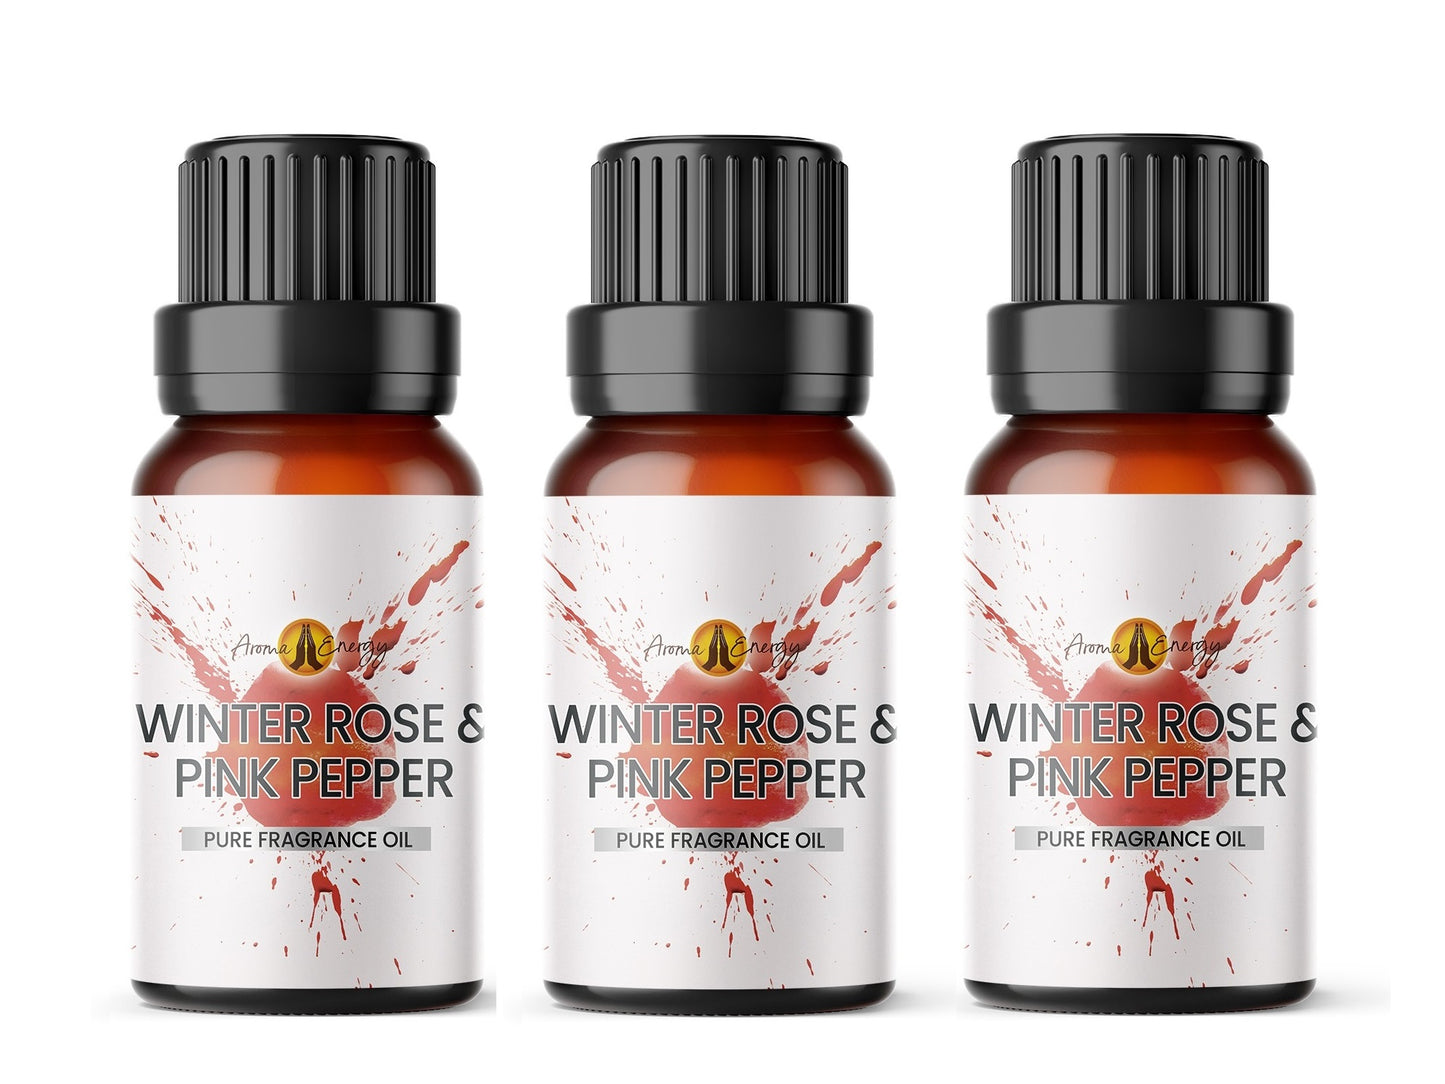 Winter Rose & Pink Pepper Fragrance Oil | Christmas fragrance oil - Aroma Energy